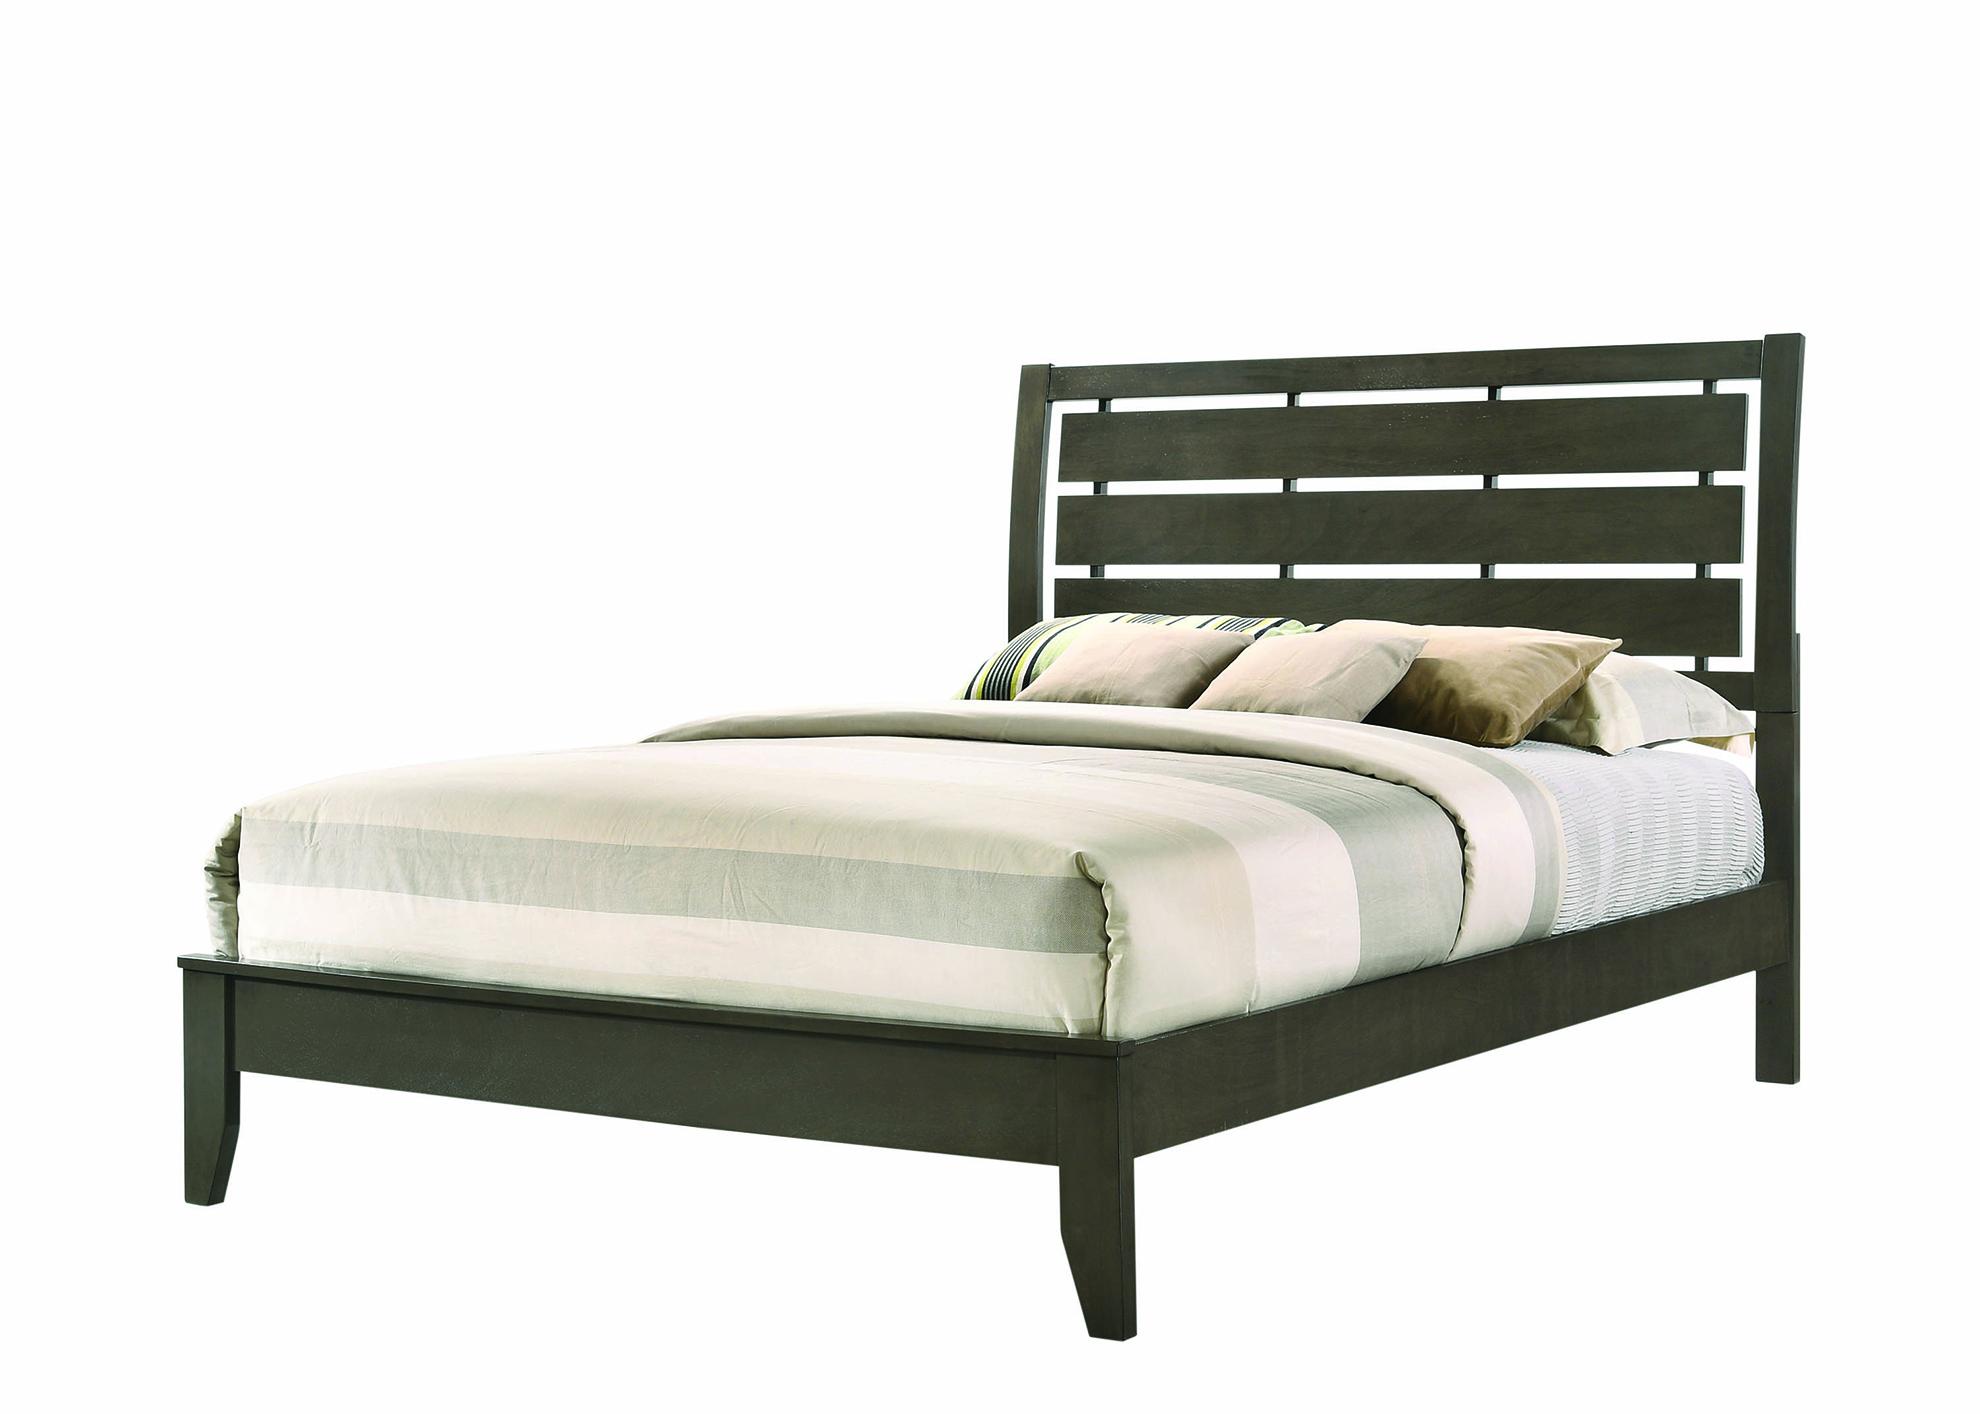 

    
Transitional Mod Gray Wood Queen Bedroom Set 5pcs Coaster 215841Q Serenity
